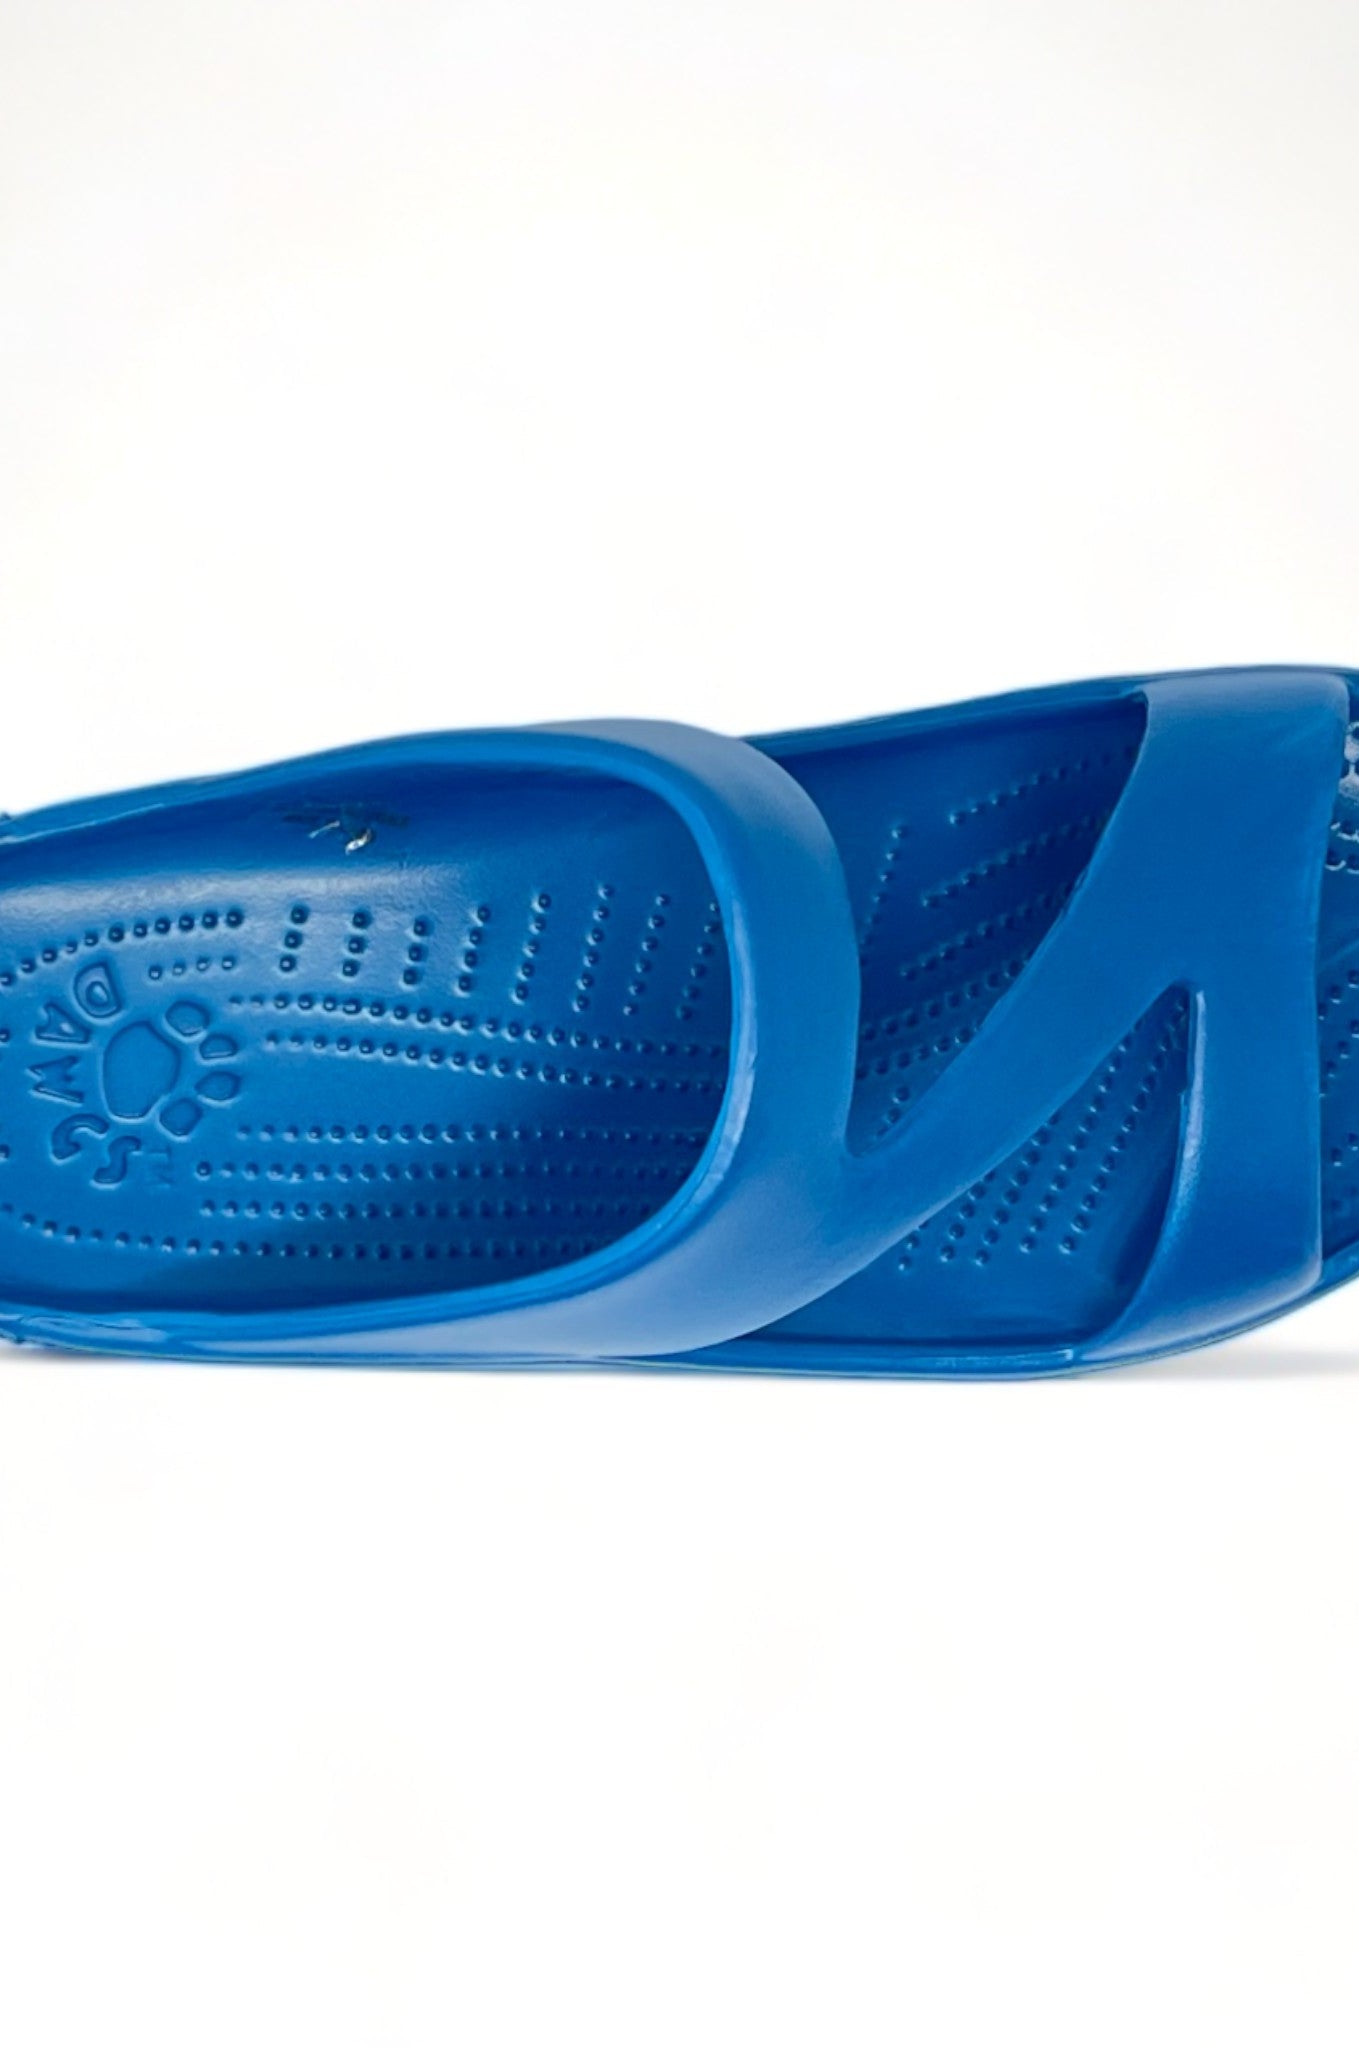 Women's Z Sandals - Ocean Blue DAWGS USA